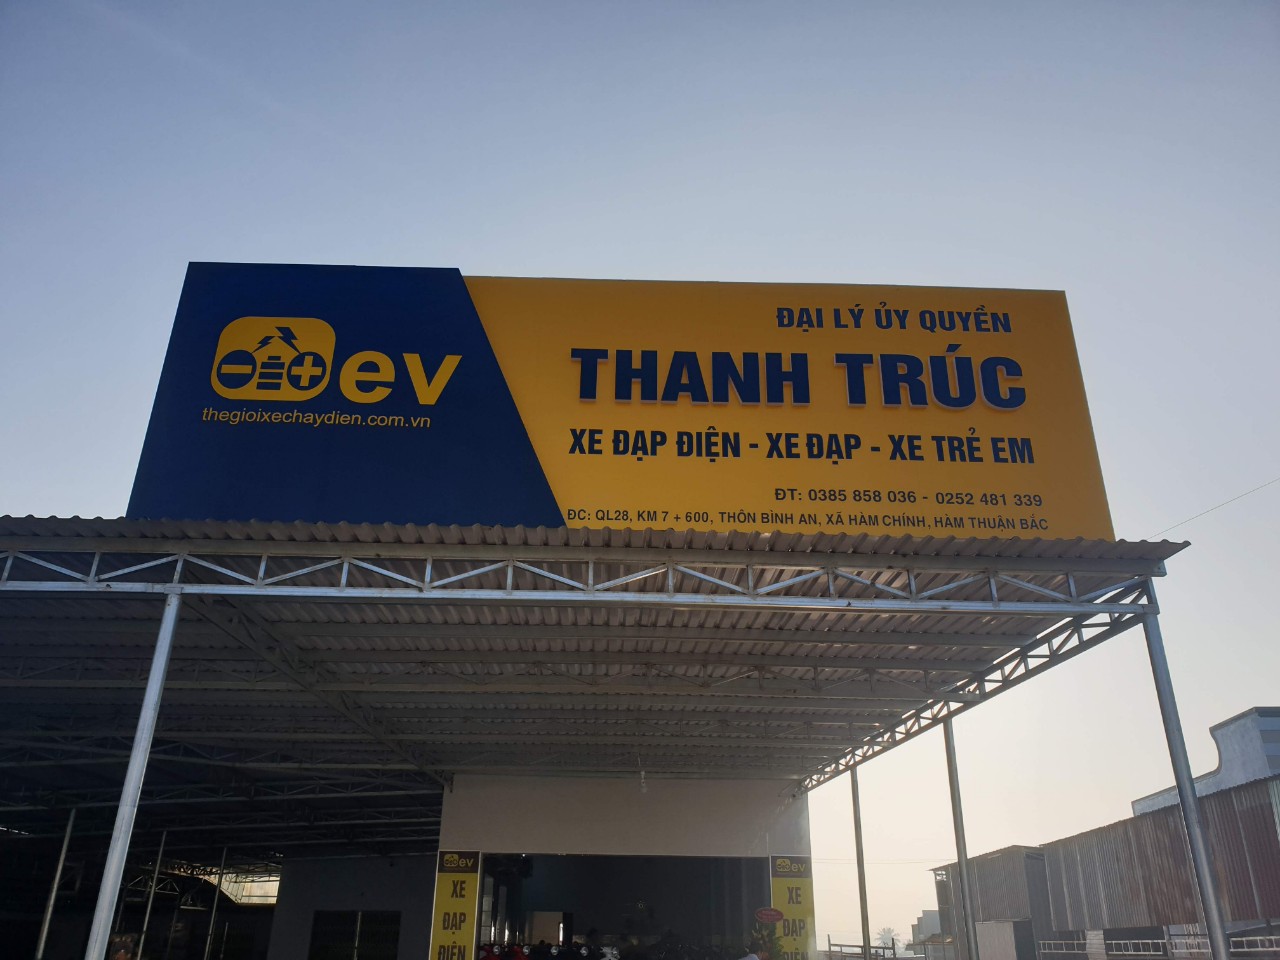 Đại lý uỷ quyền xe điện EV Thanh Trúc của Thế Giới Xe Chạy Điện tại Hàm Thuận Bắc